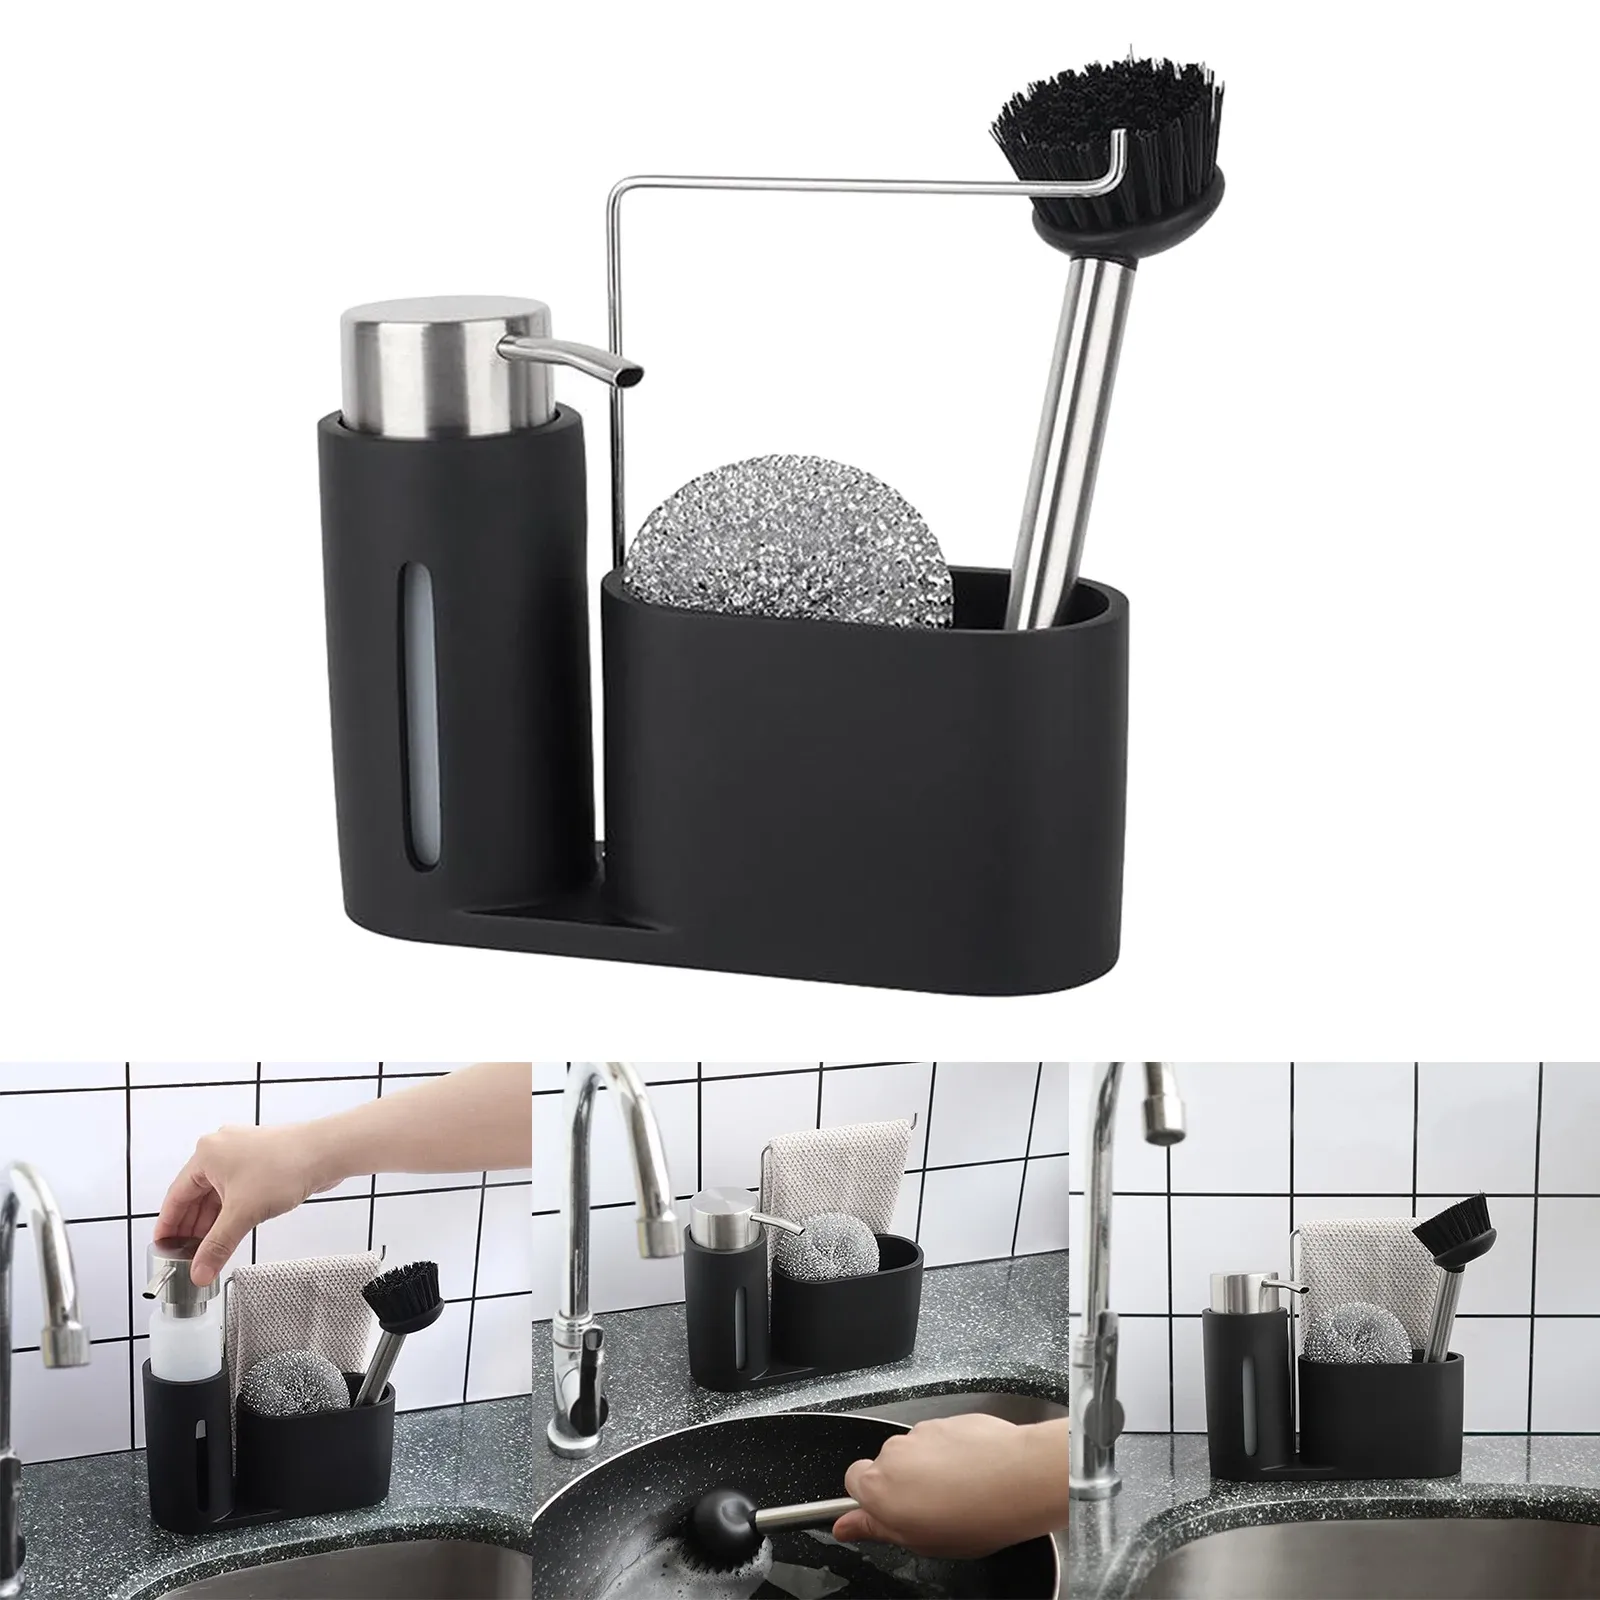 Dispensers Premium Kitchen Cleaning Kit Soap Dispenser Detergent Steel Ball Brush Storage Organizer Holder Caddy Set For Sink Badrum